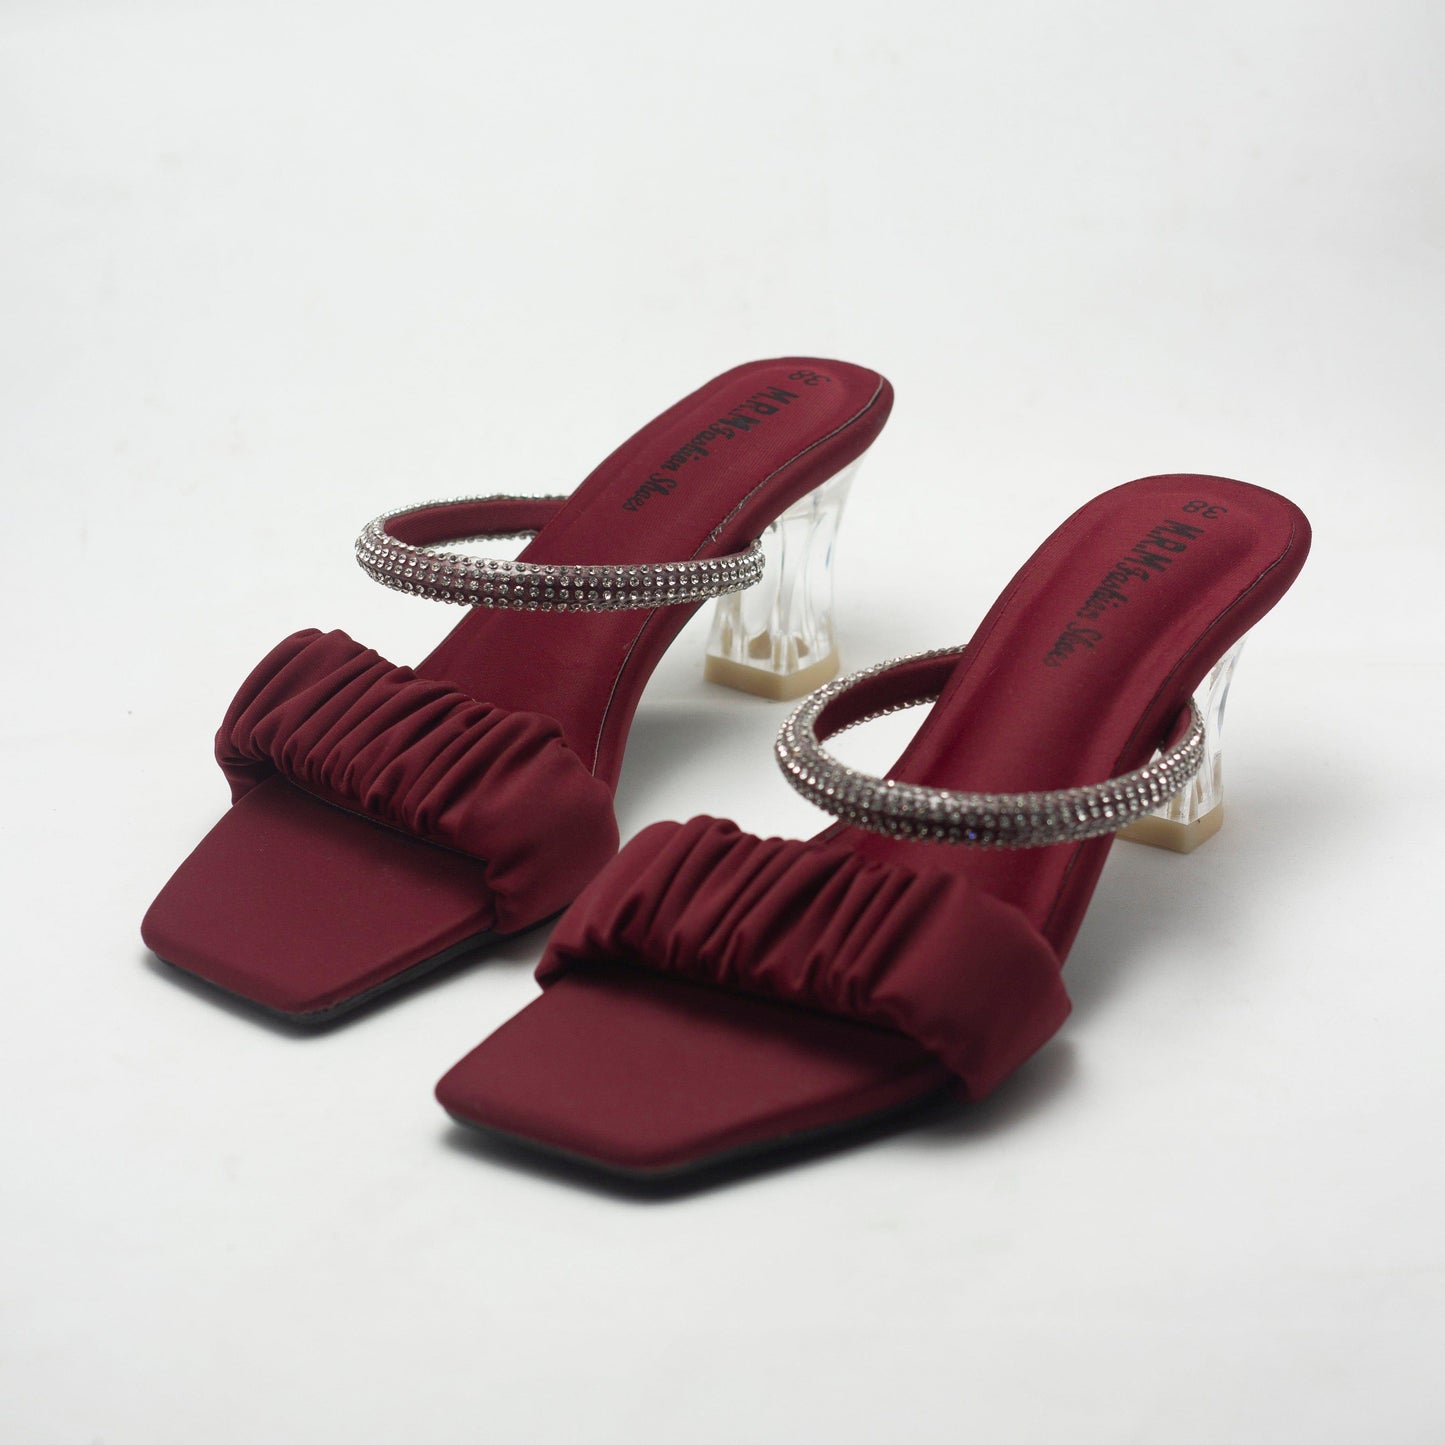 Nawabi Shoes BD 35 / maroon Pencil Heels Premium Shoes